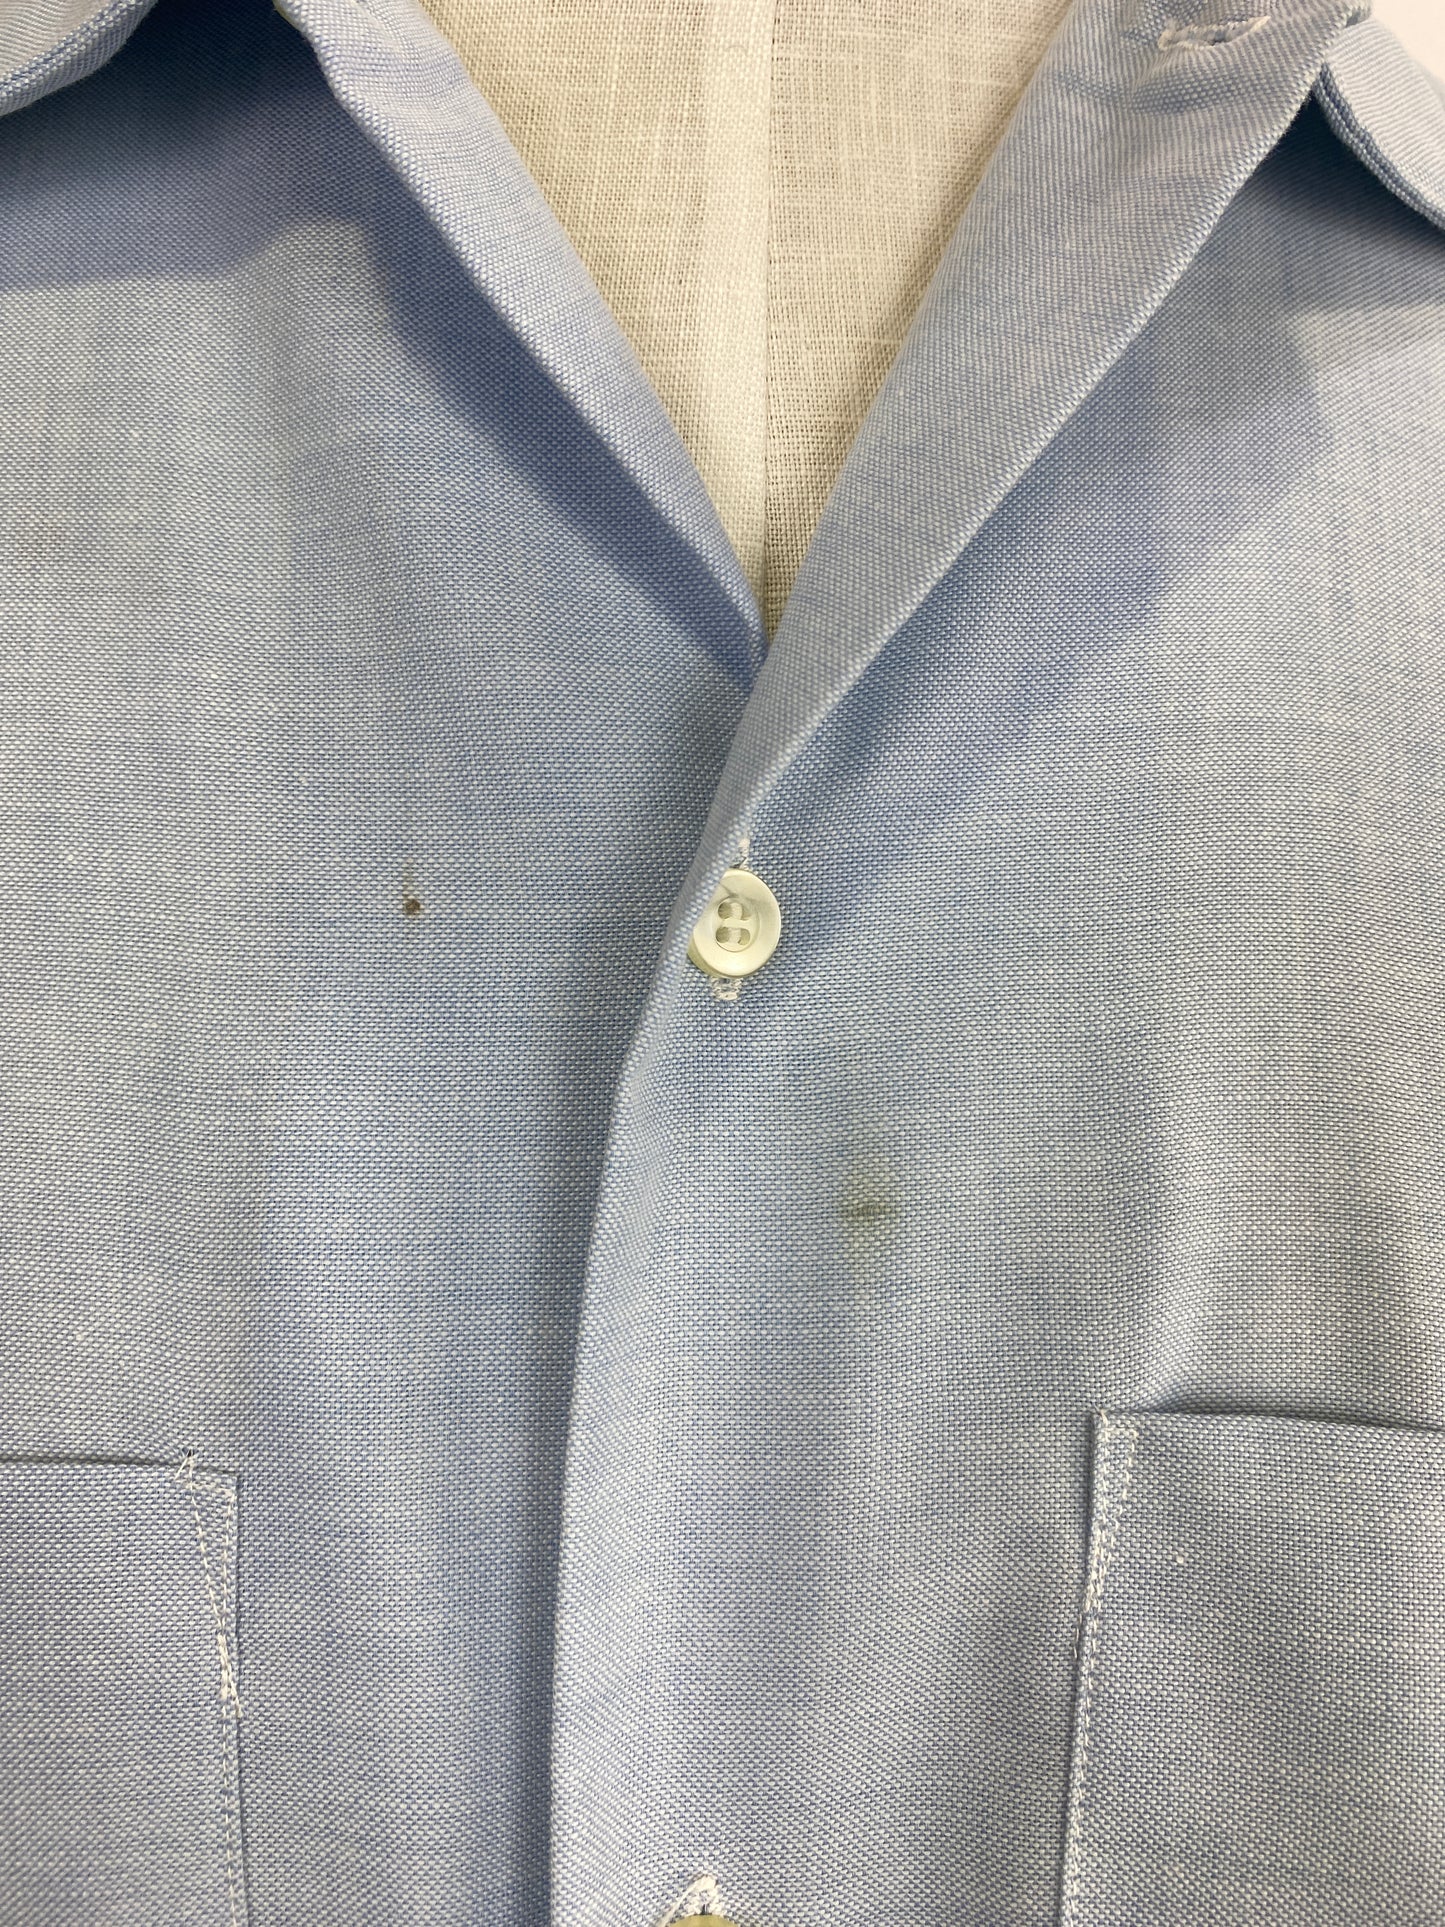 Vintage 80s Men's Light Blue Button-Up Shirt, Large